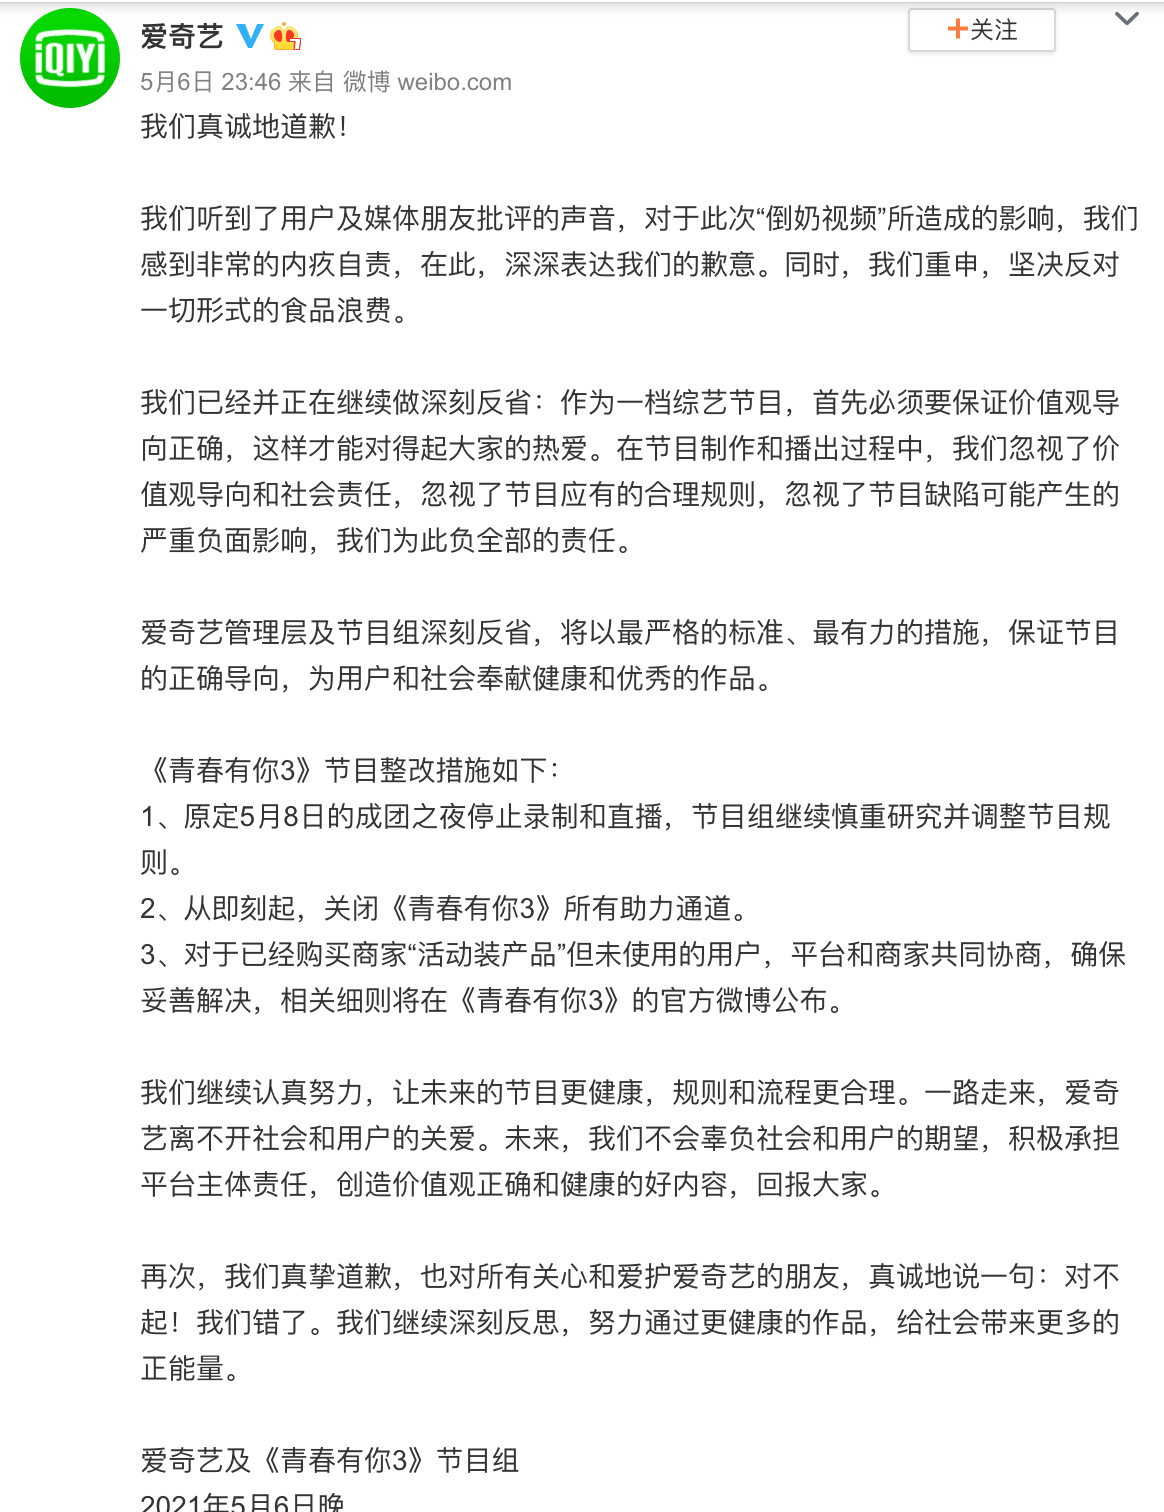 爱奇艺为为“倒奶视频”道歉 关闭《青你3》所有助力通道